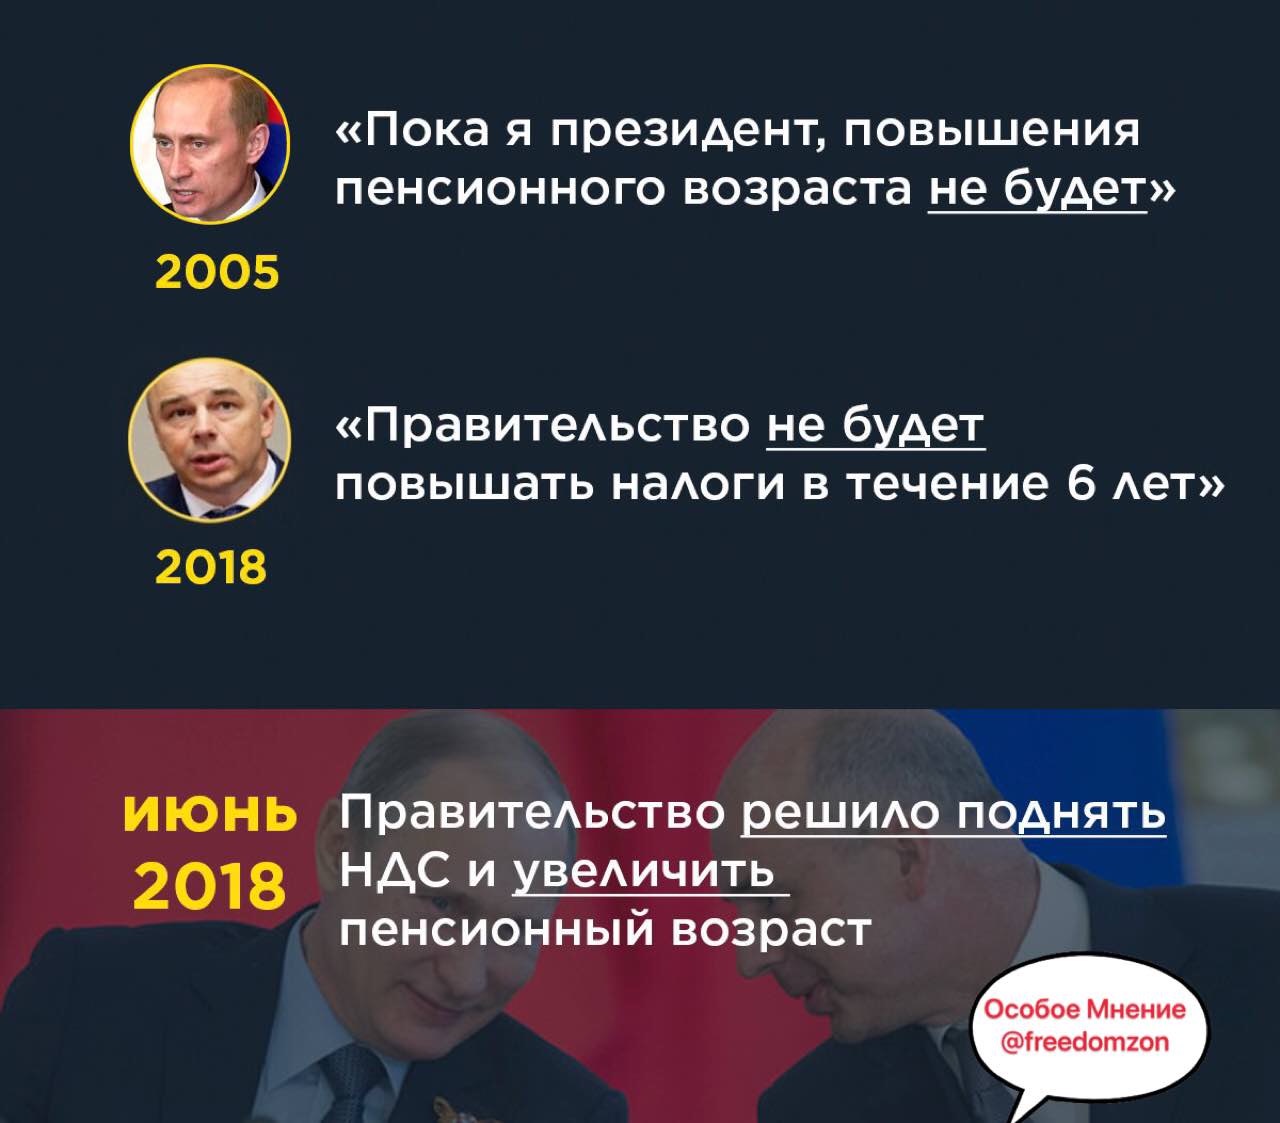 Правда будет повышение пенсии. Обещание Путина о пенсионном возрасте.